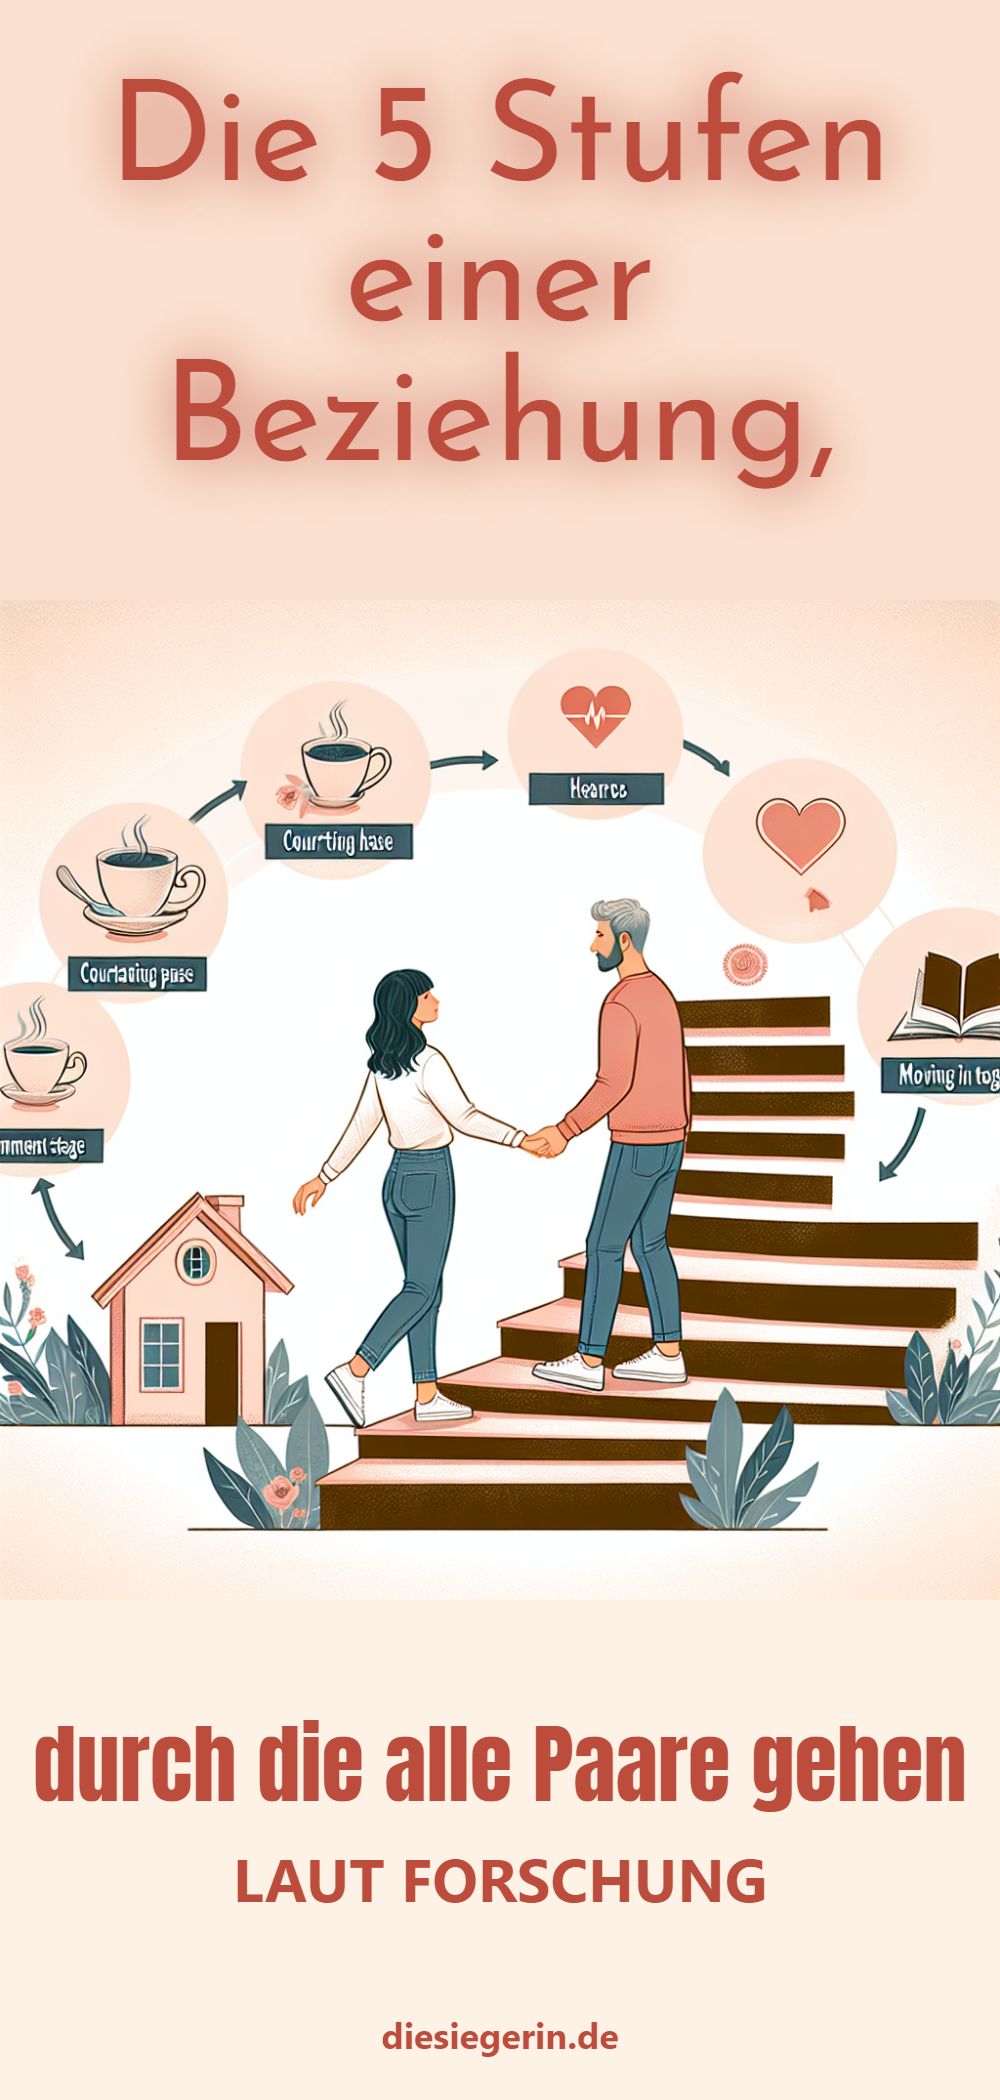 Die 5 Stufen einer Beziehung, durch die alle Paare gehen LAUT FORSCHUNG